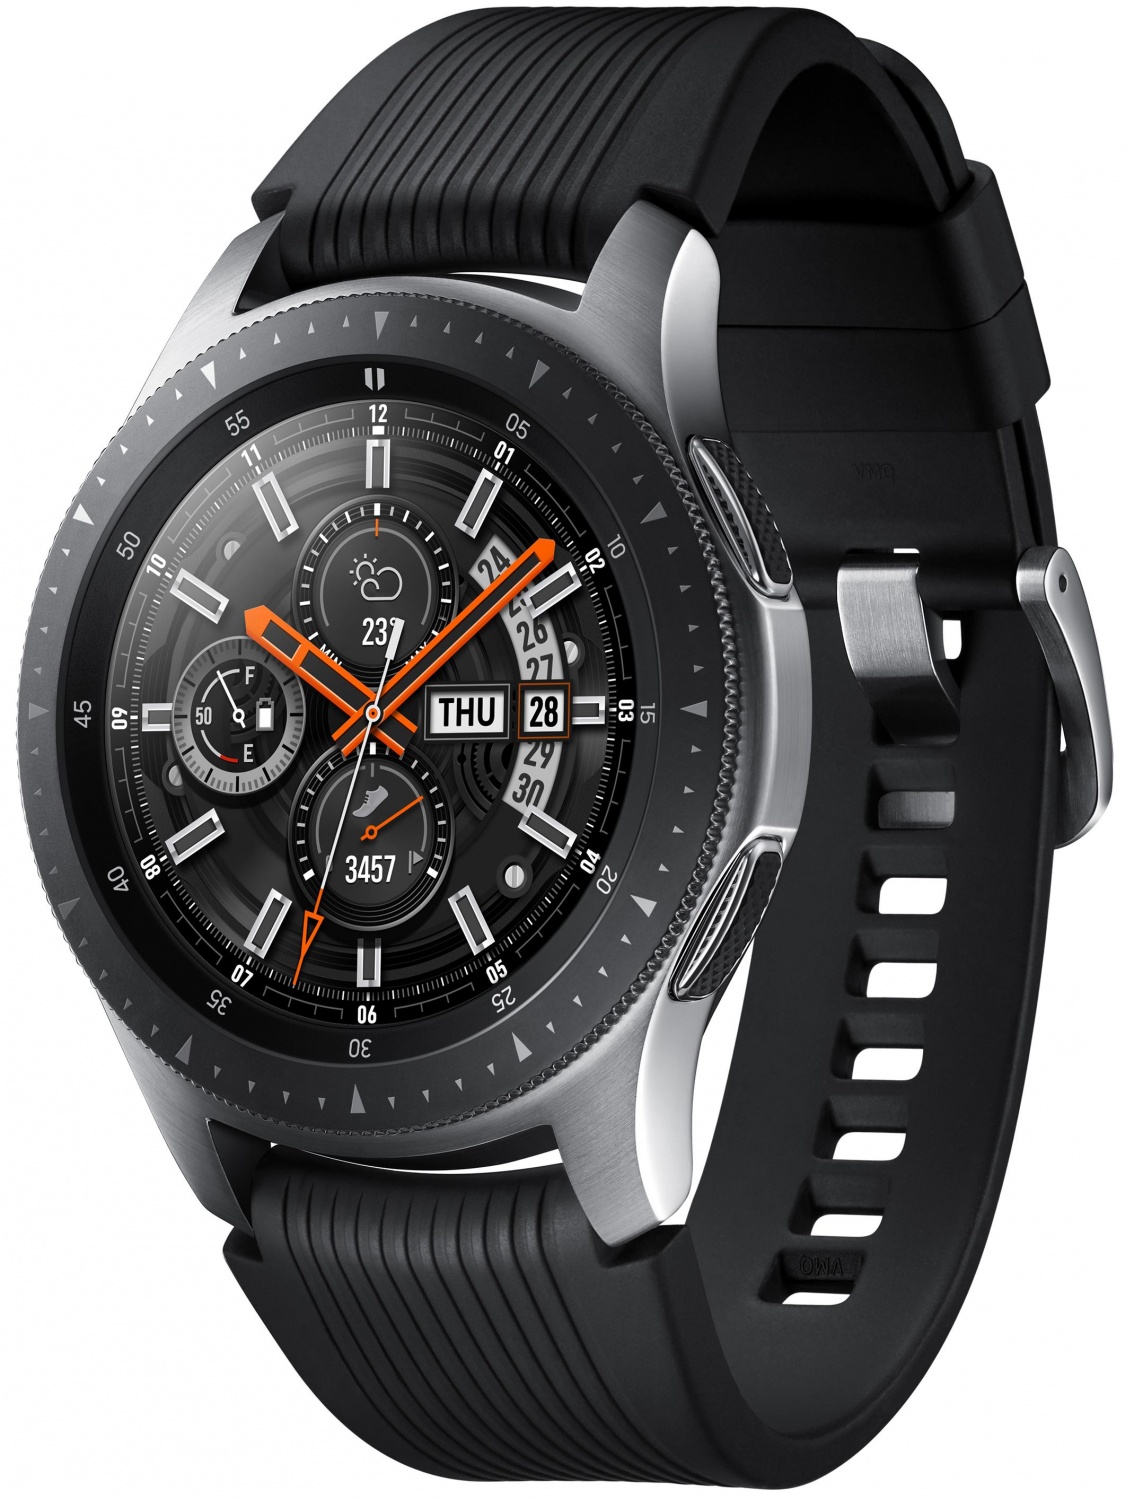 Samsung Galaxy watch SM-r800